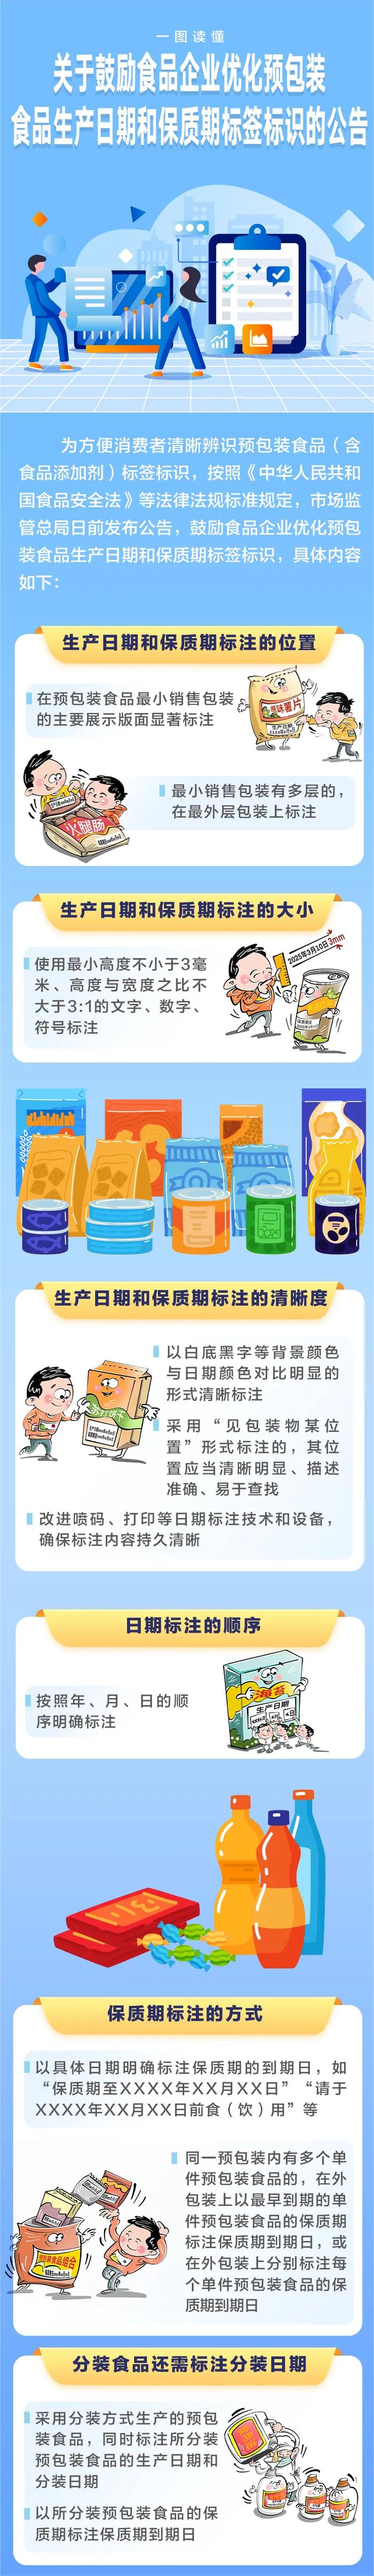 国家市场监督总局关于鼓励食品企业优化预包装食品生产日期和保质期标签标识的公告